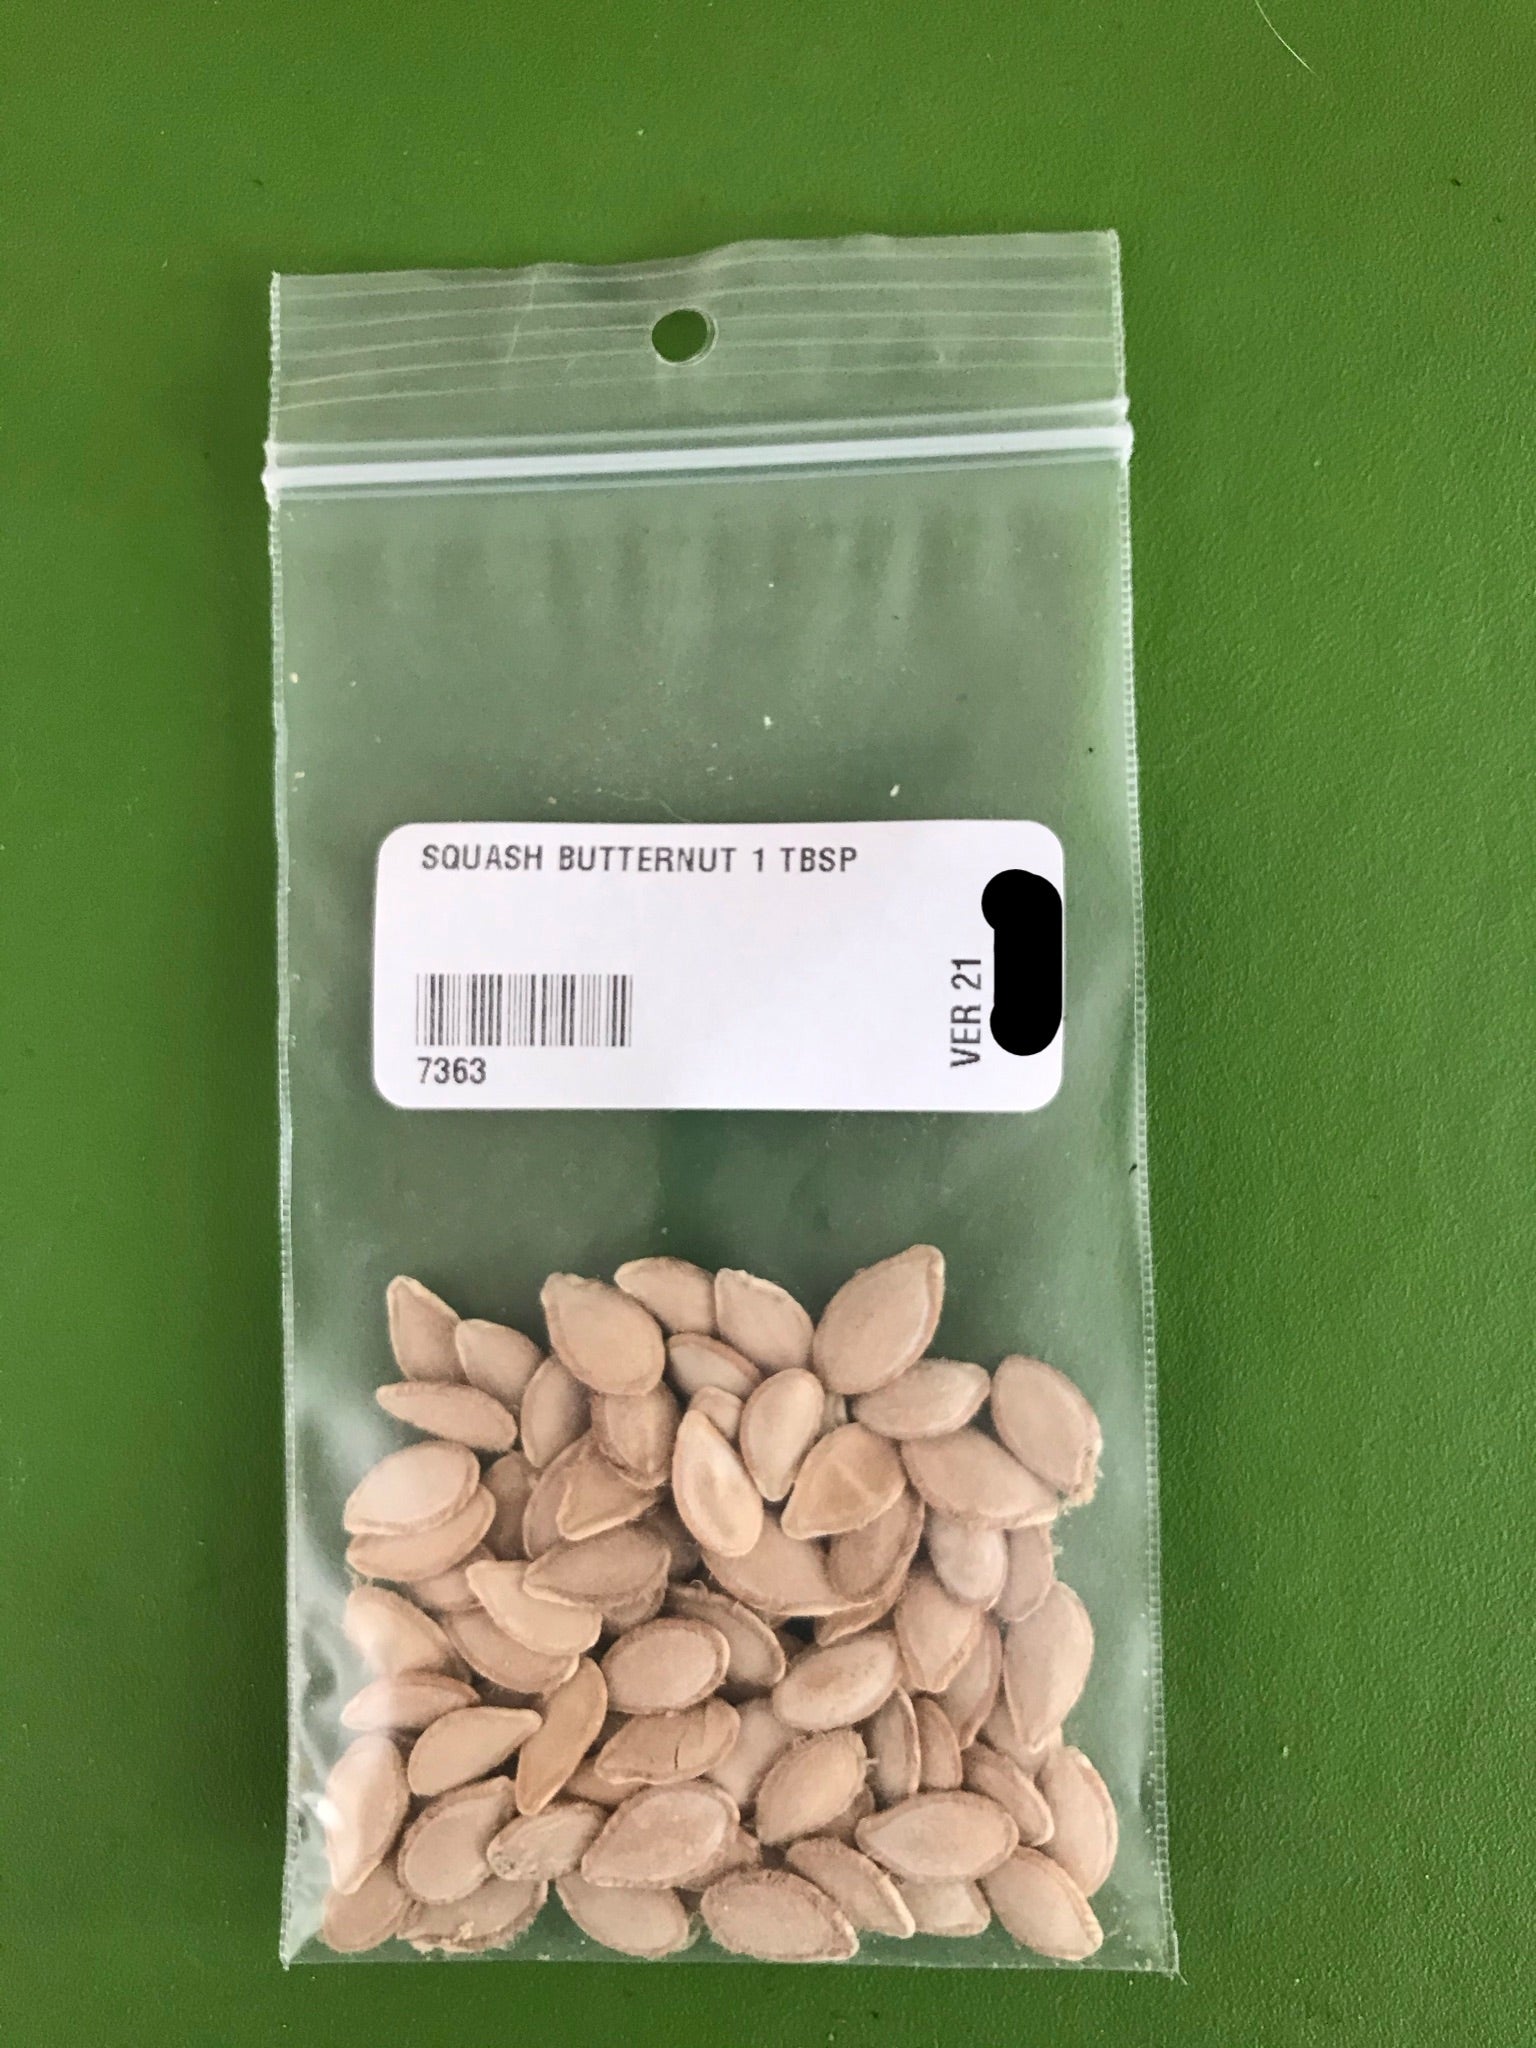 Waltham Butternut Squash Seeds (Winter Type) - 1 Tbsp - Bulk